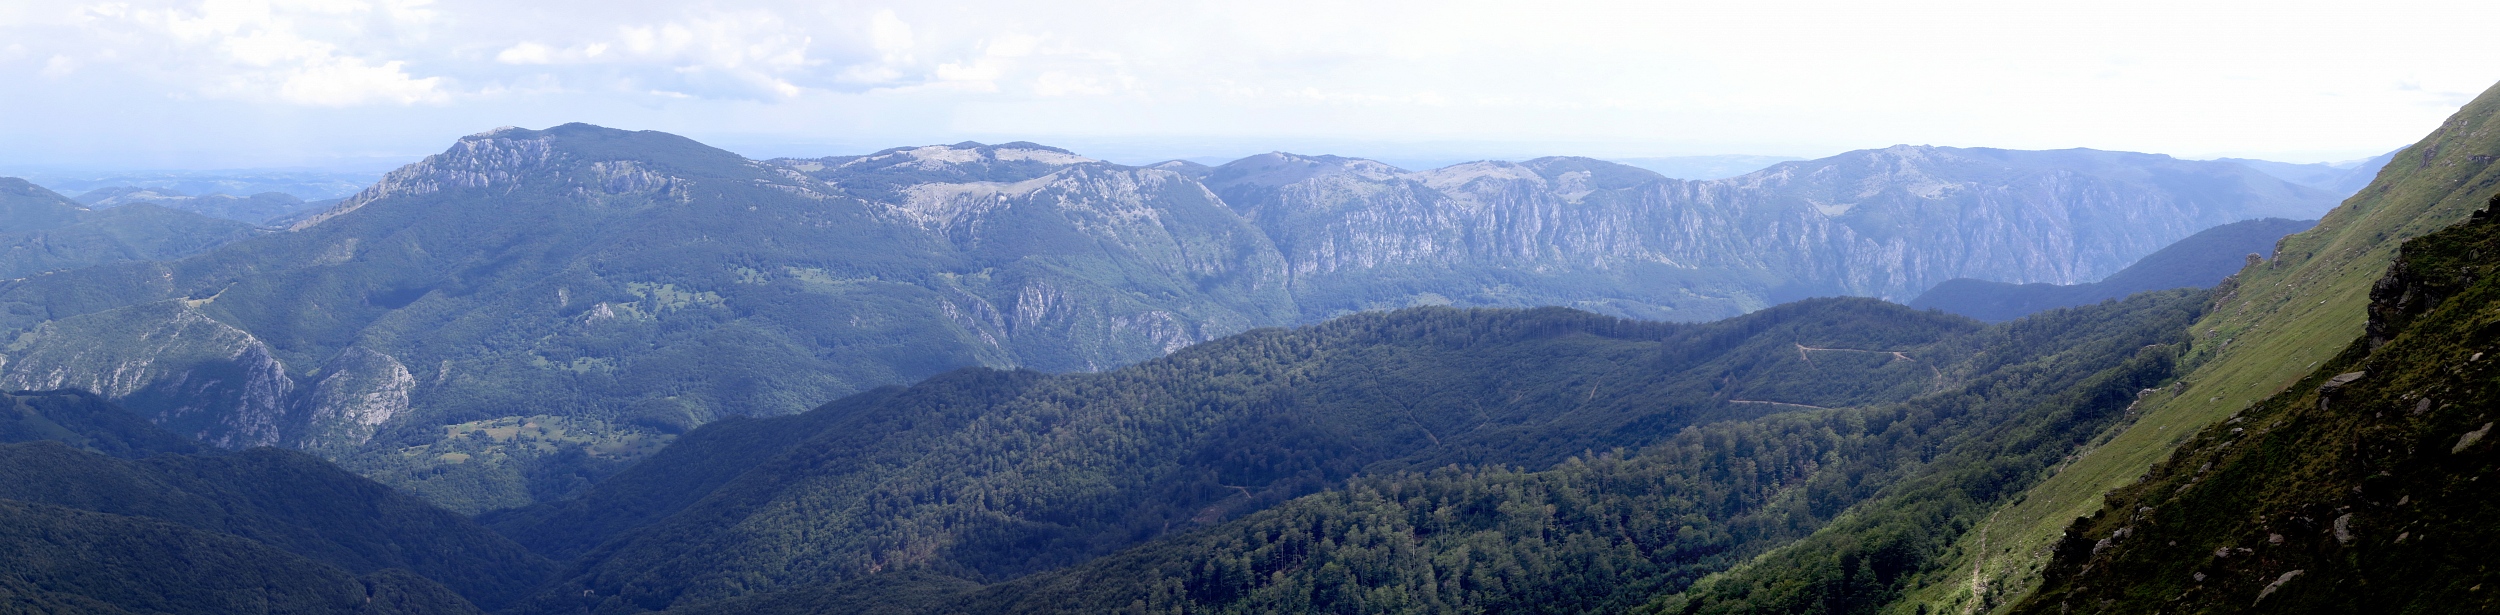 Munții Mehedinți / Pohled na Munții Mehedinți z pohoří Cernei (od vrcholku Vlașcu Mare). Rozklikněte si plný detail, dá se zoomovat. Je vidět takřka kolmé stěny na severní straně - a nahoře "stolová hora".